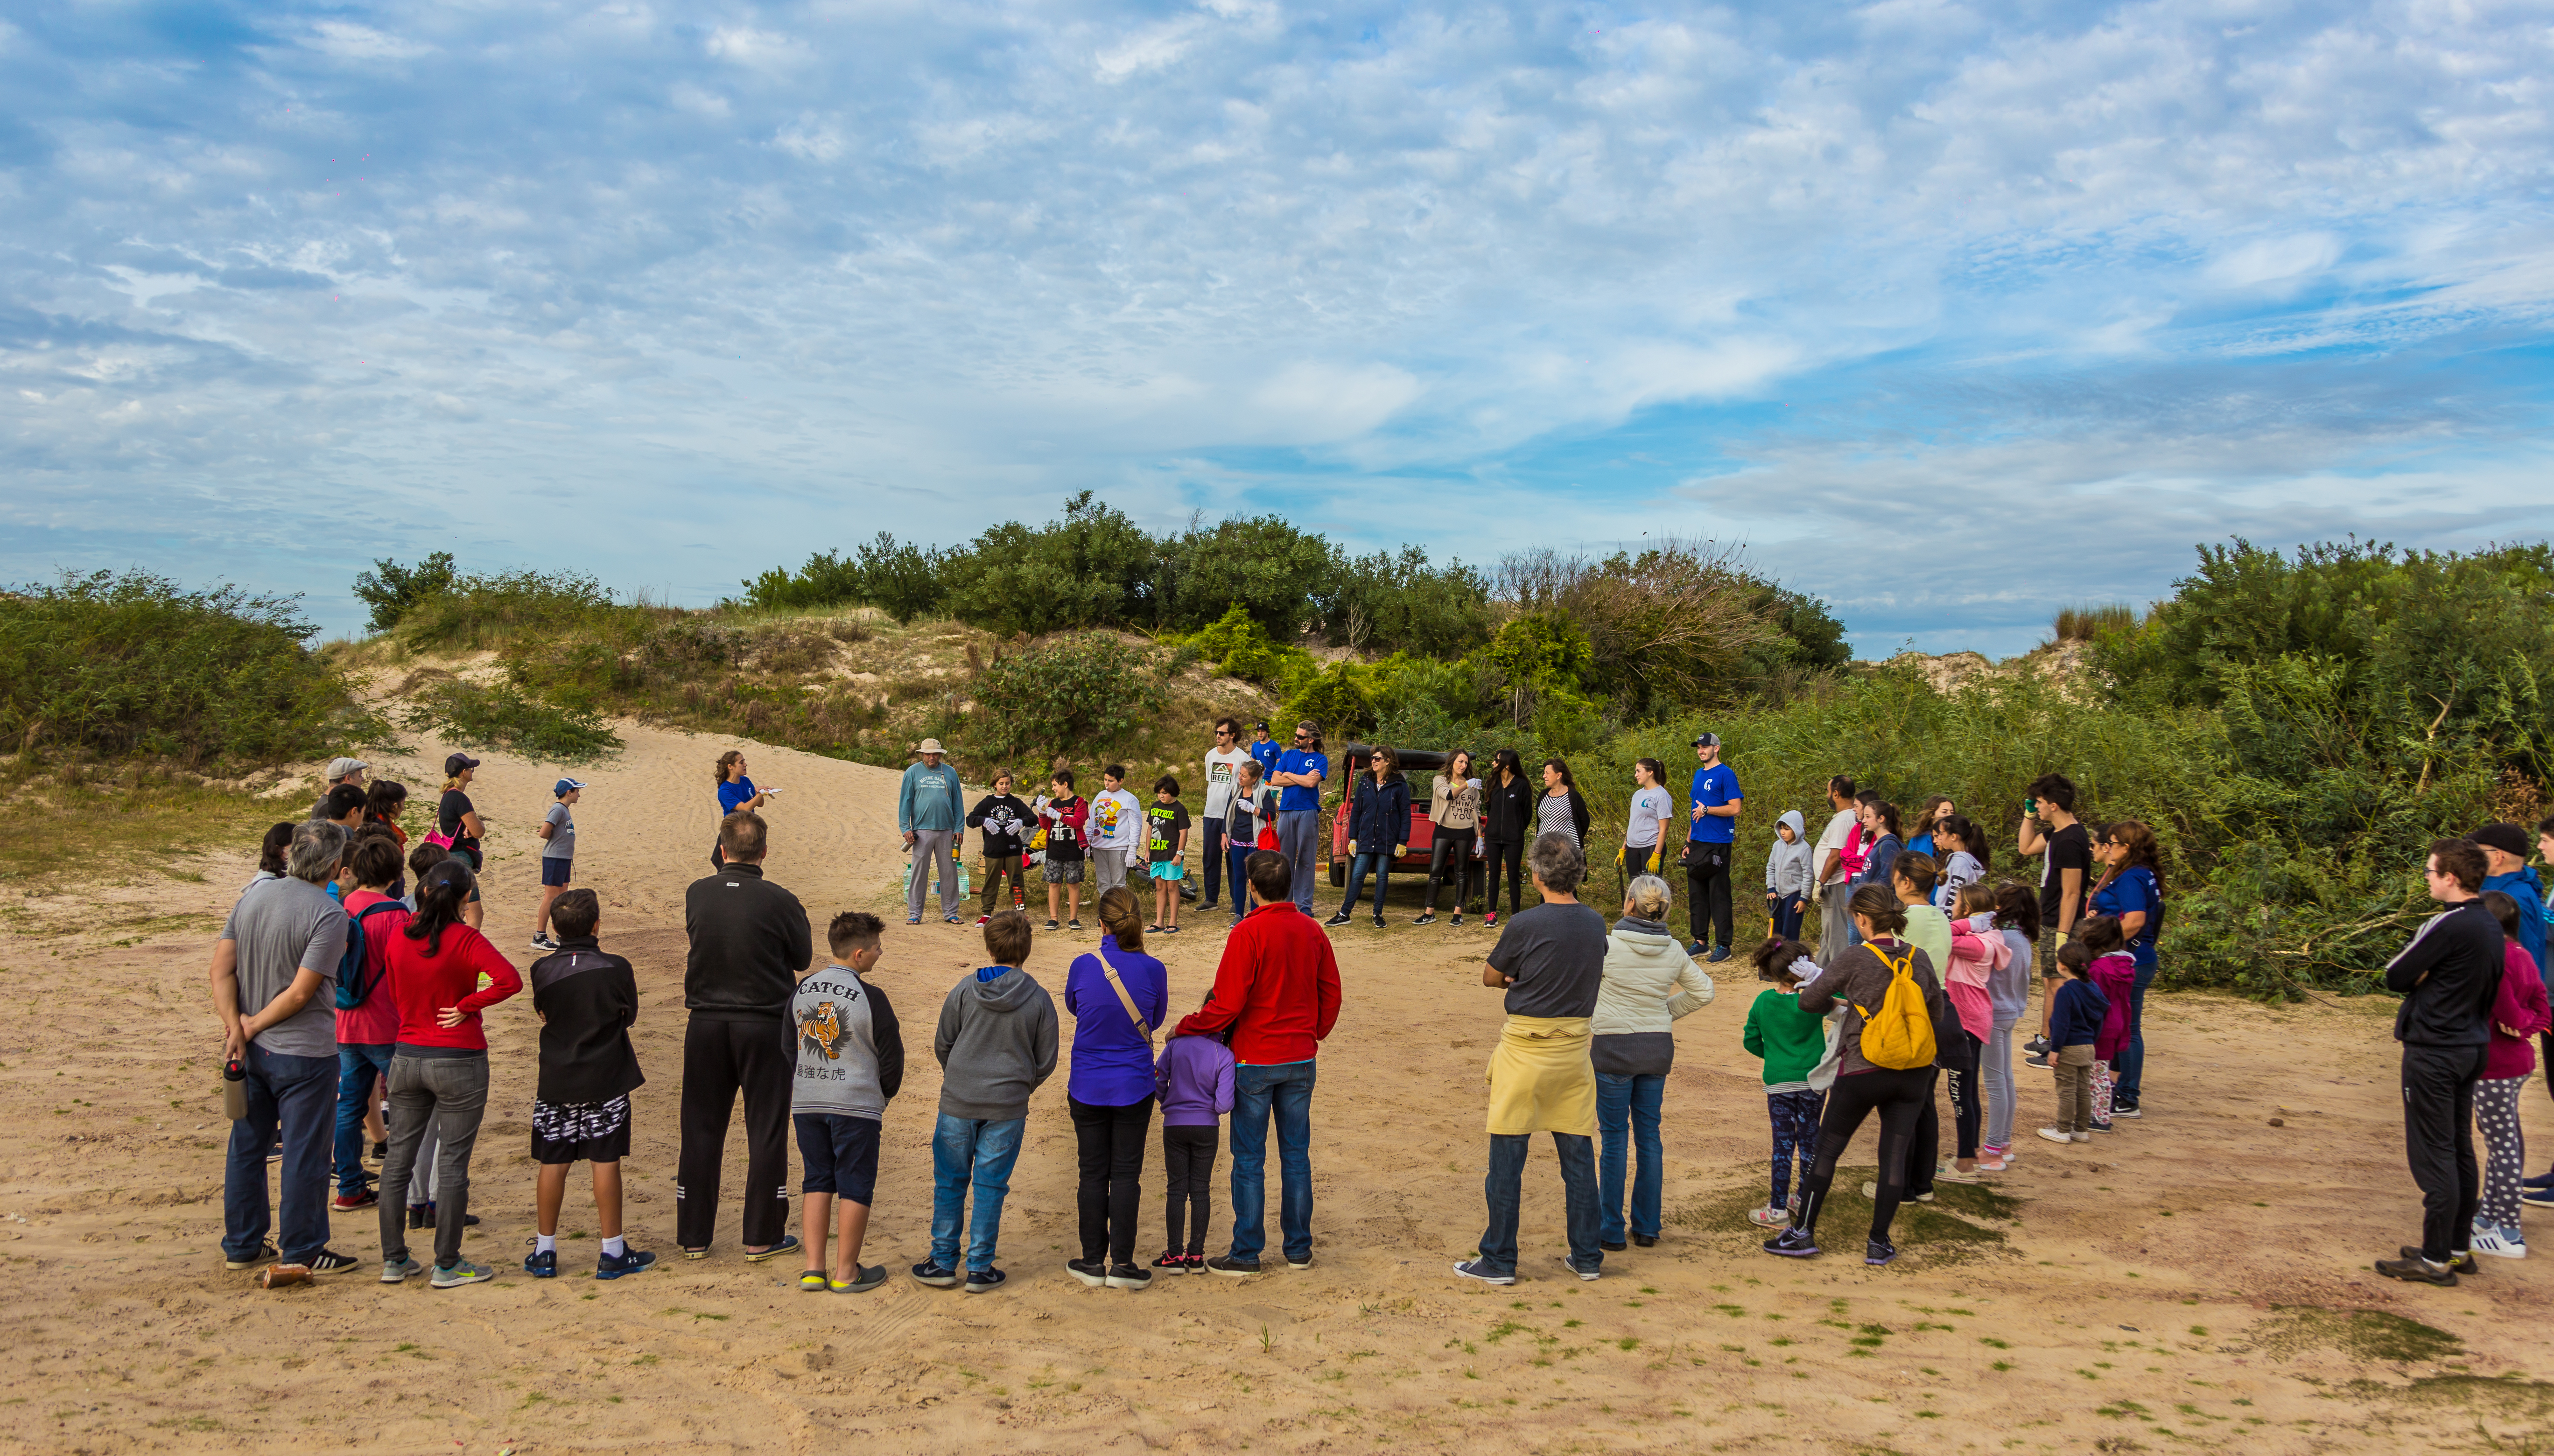 Jornadas comunitarias de restauración de dunas costeras. Canelones, Uruguay - Flavio Scasso